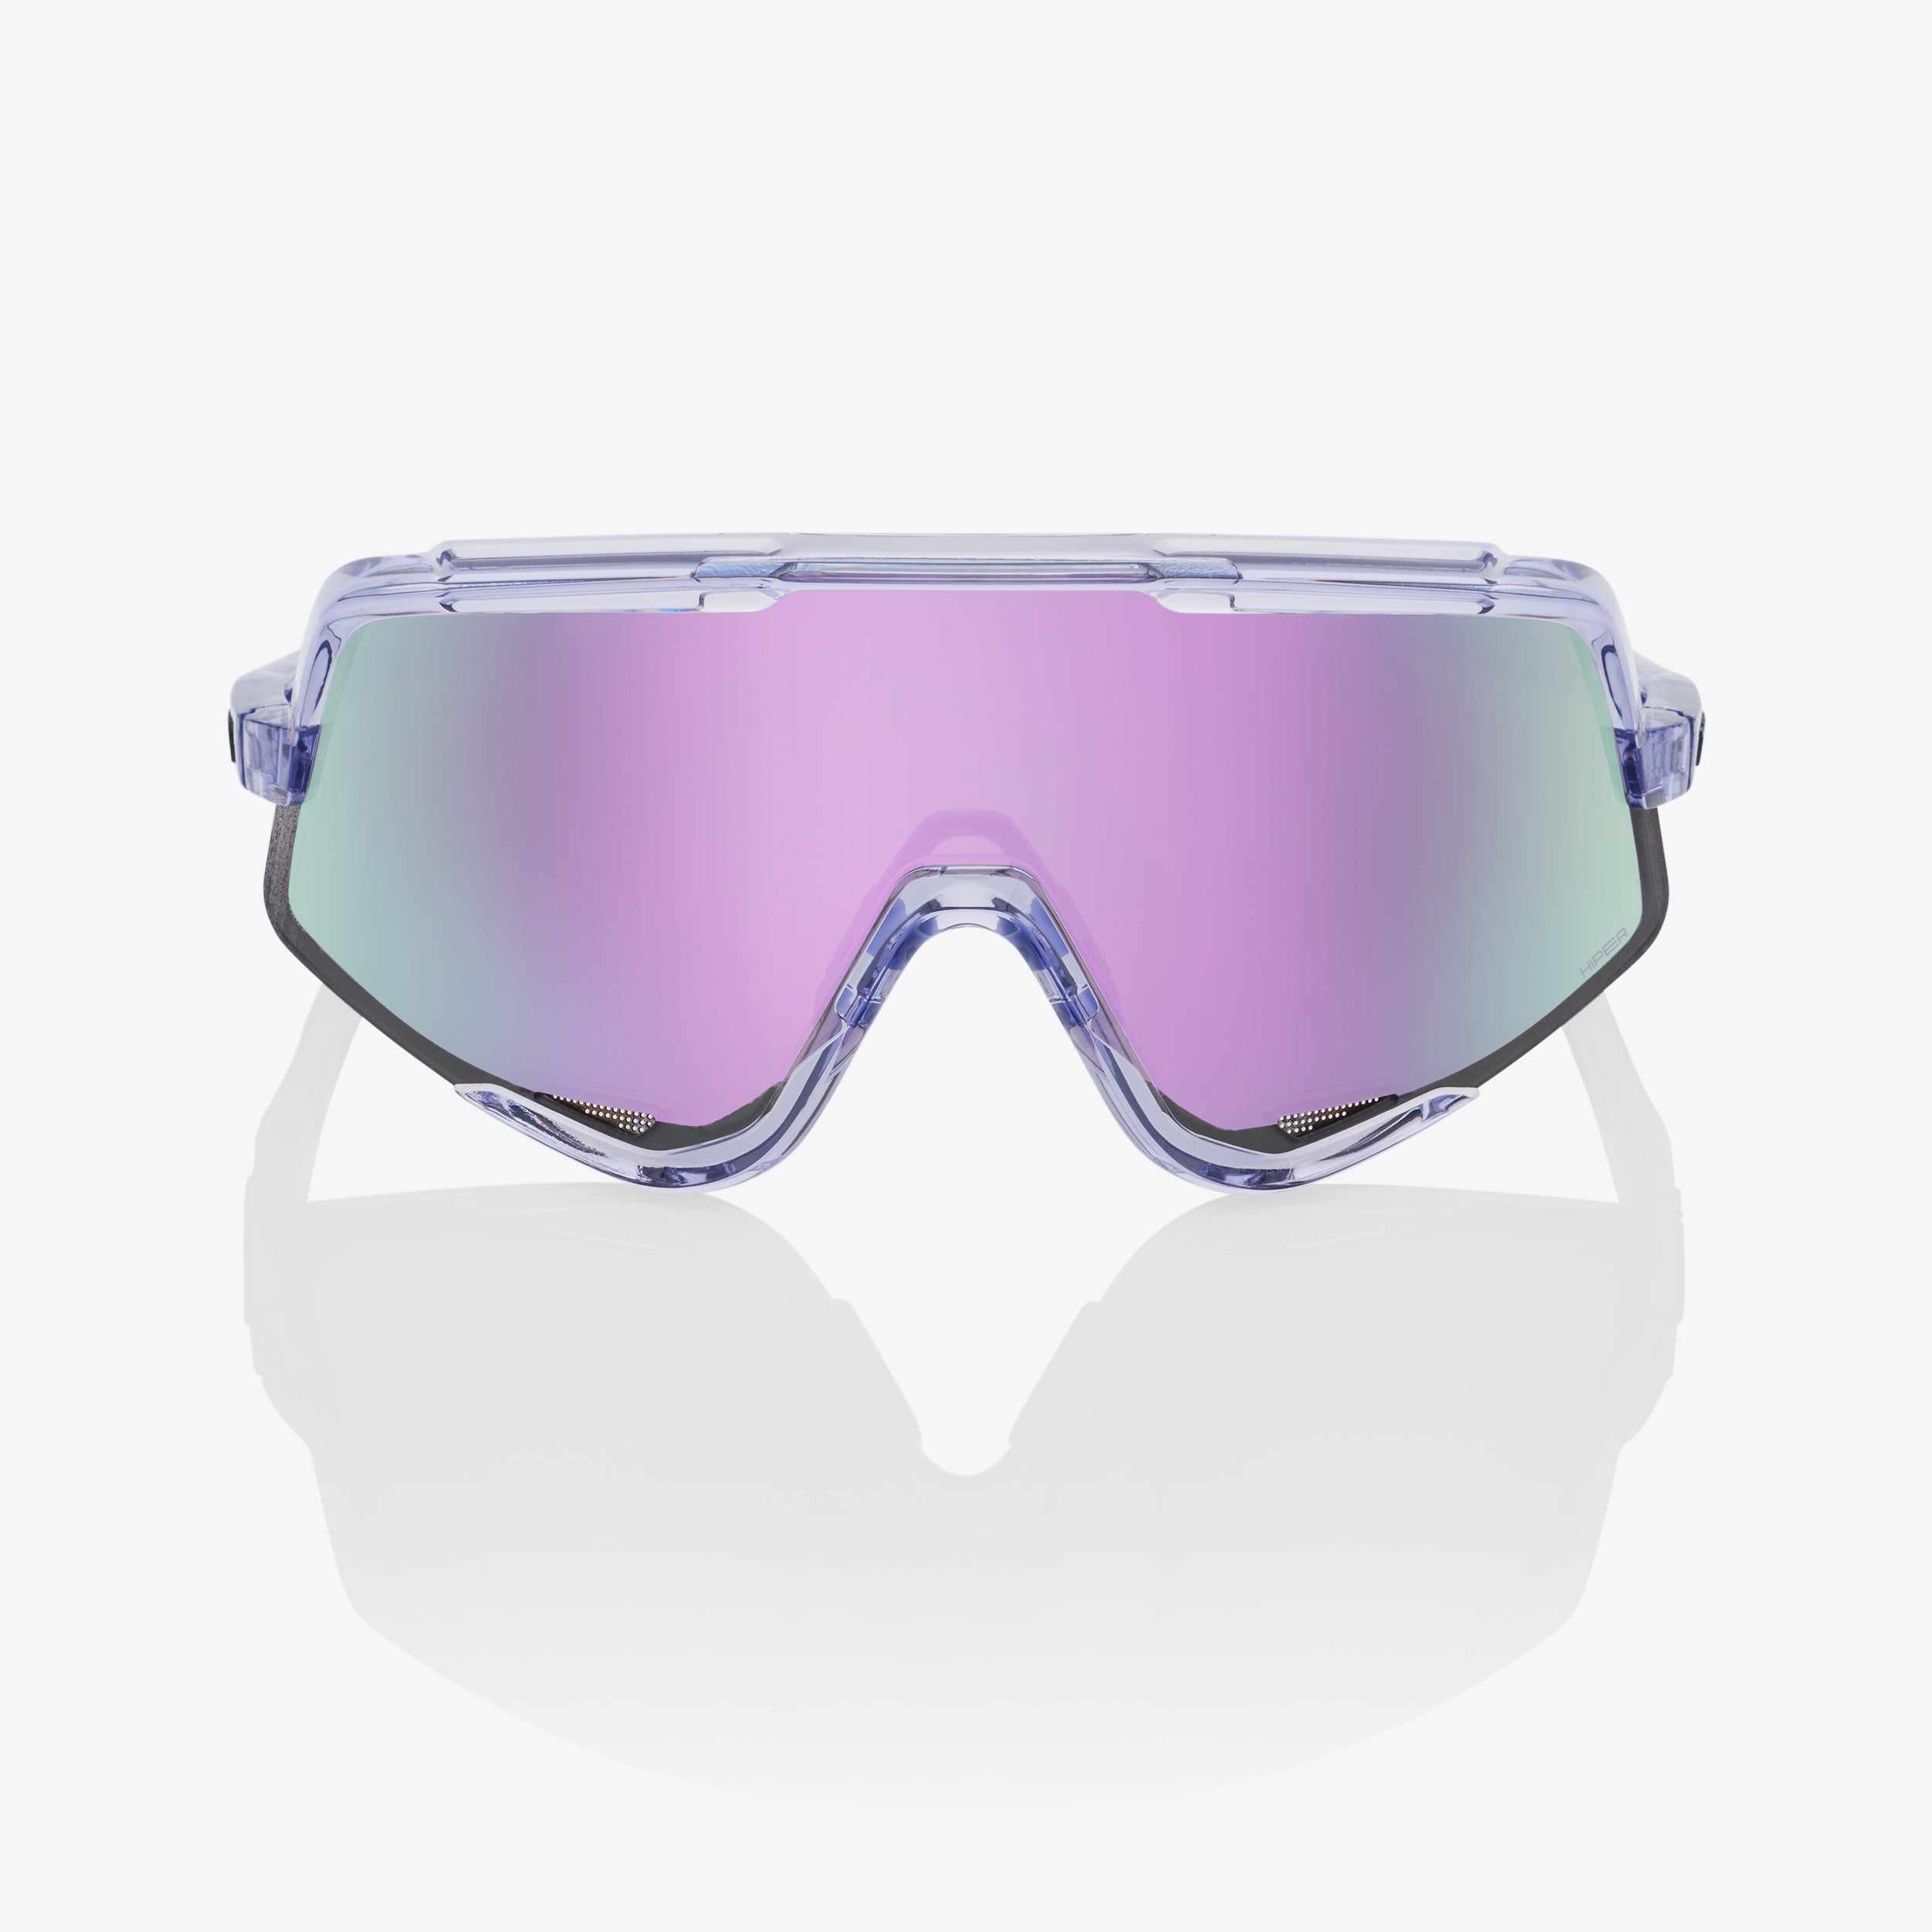 GLENDALE® - Polished Translucent Lavender - HiPER® Lavender Mirror Lens